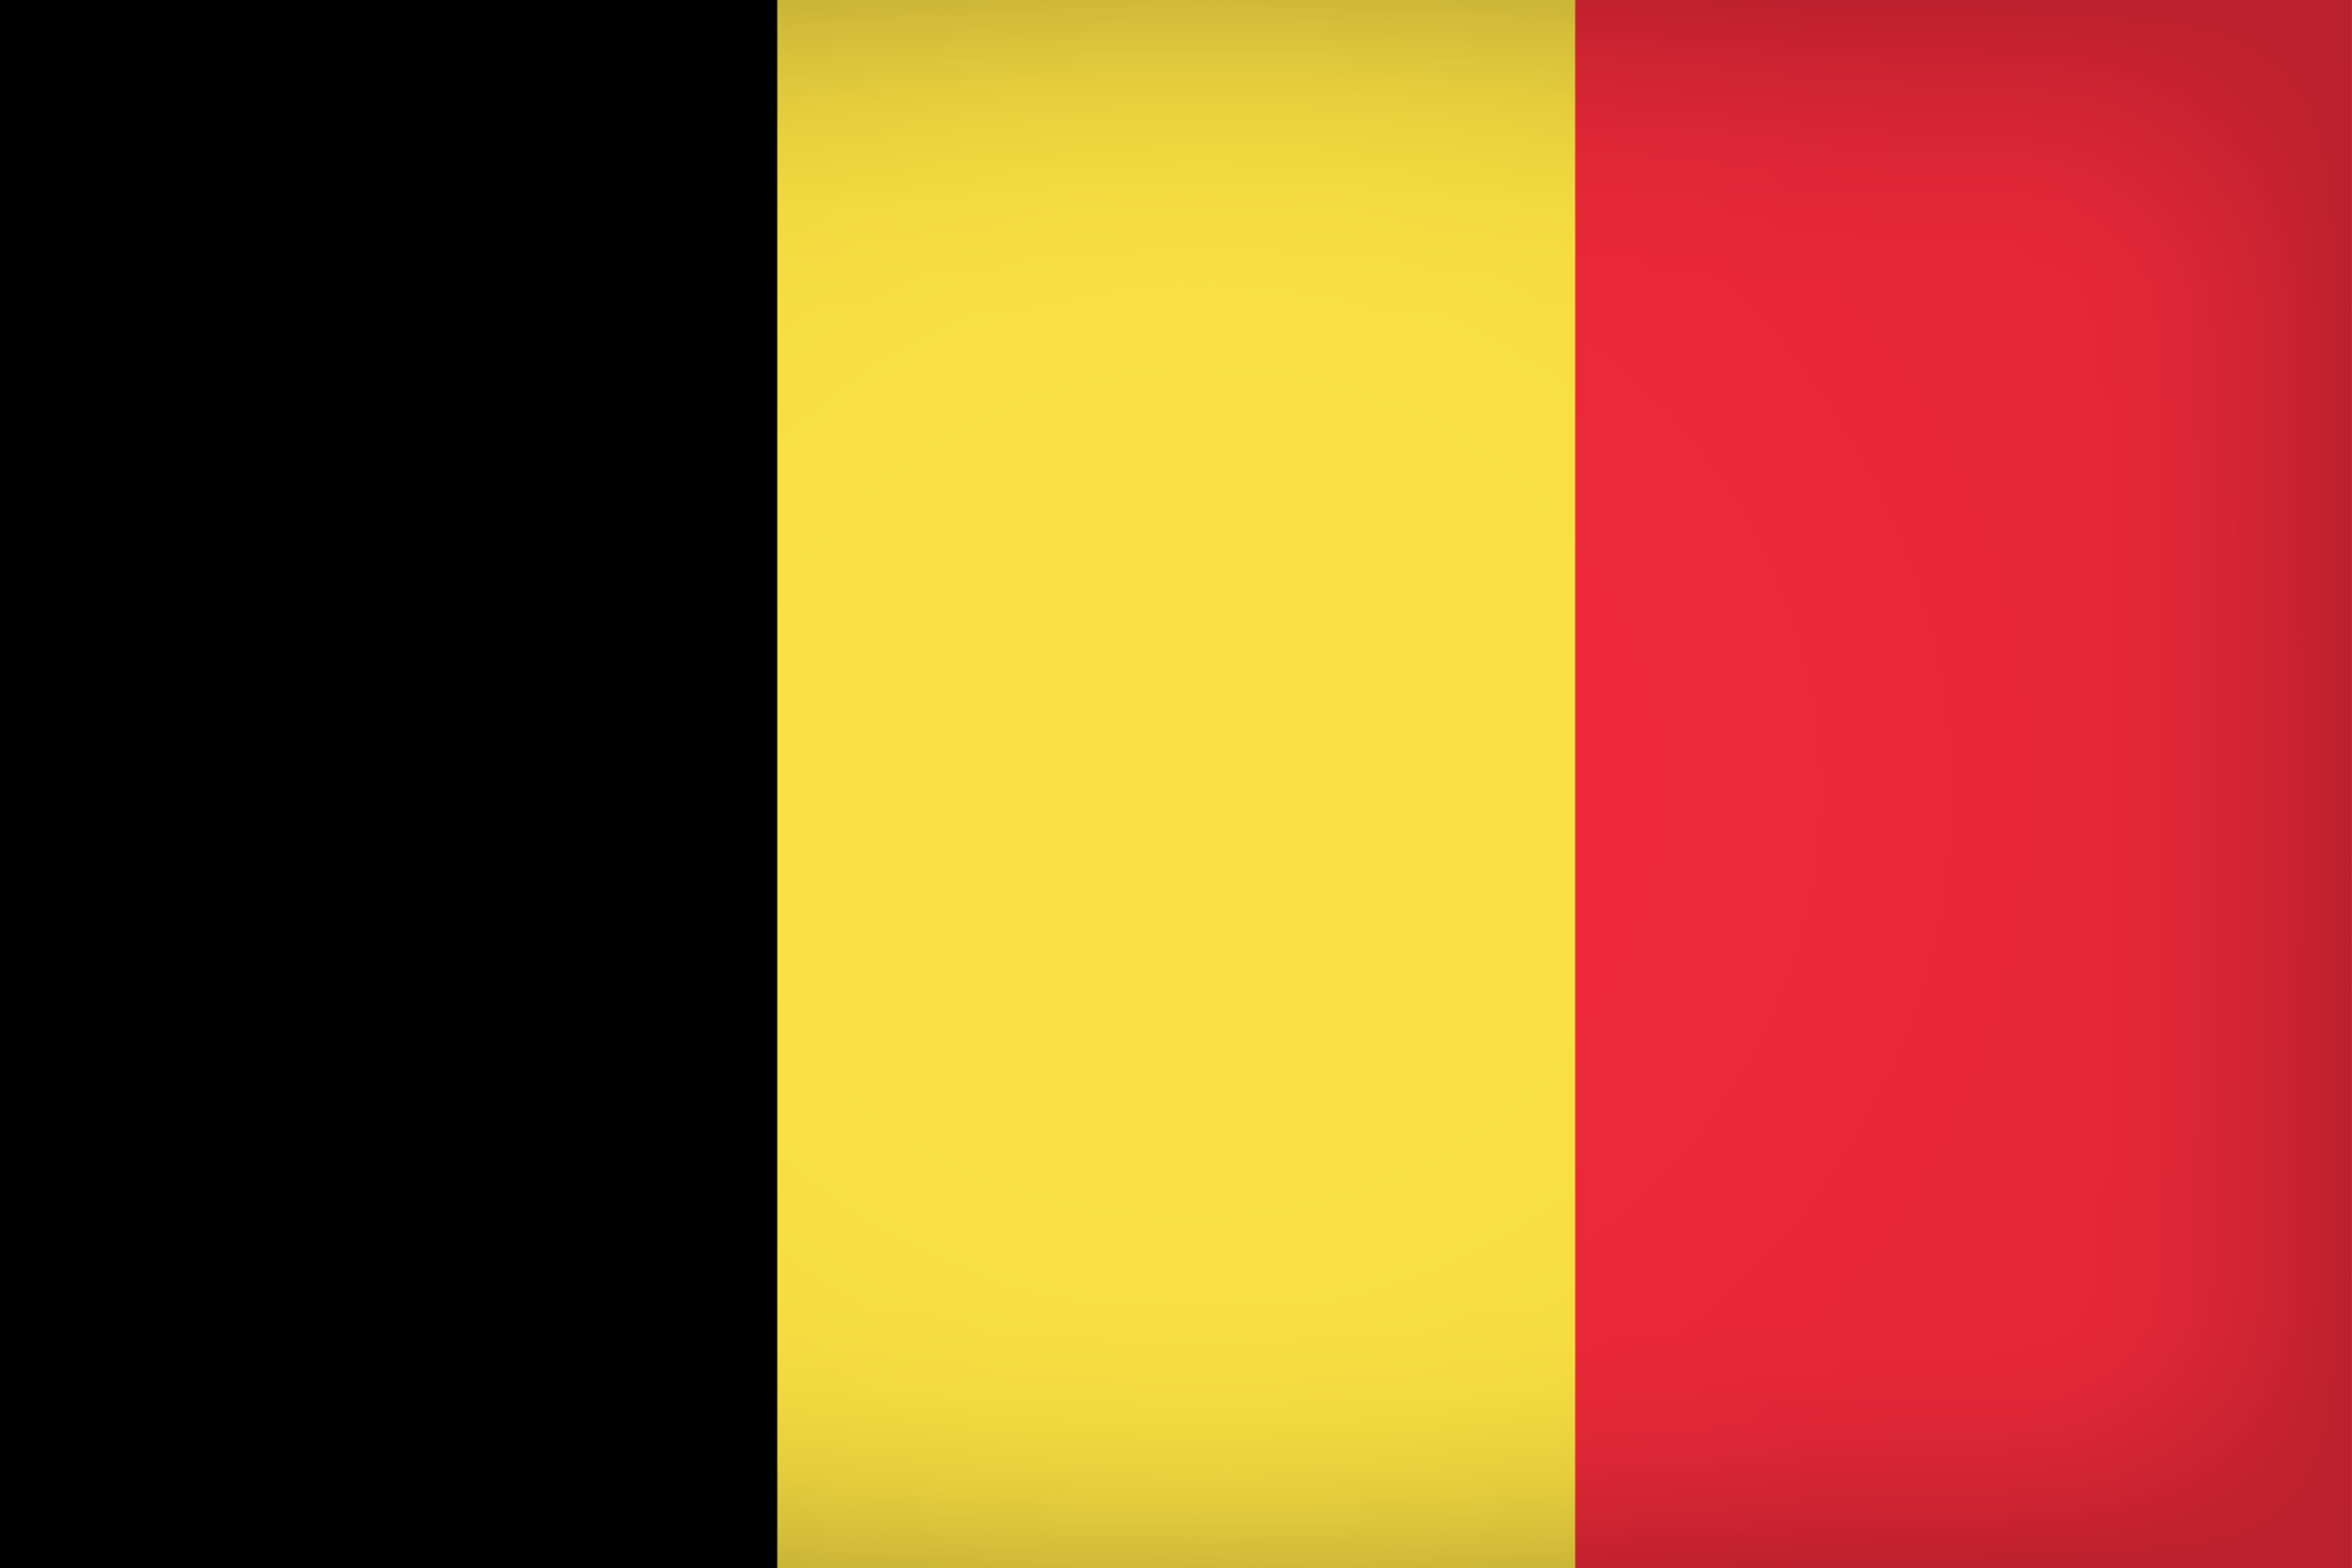 Belgium Large Flag